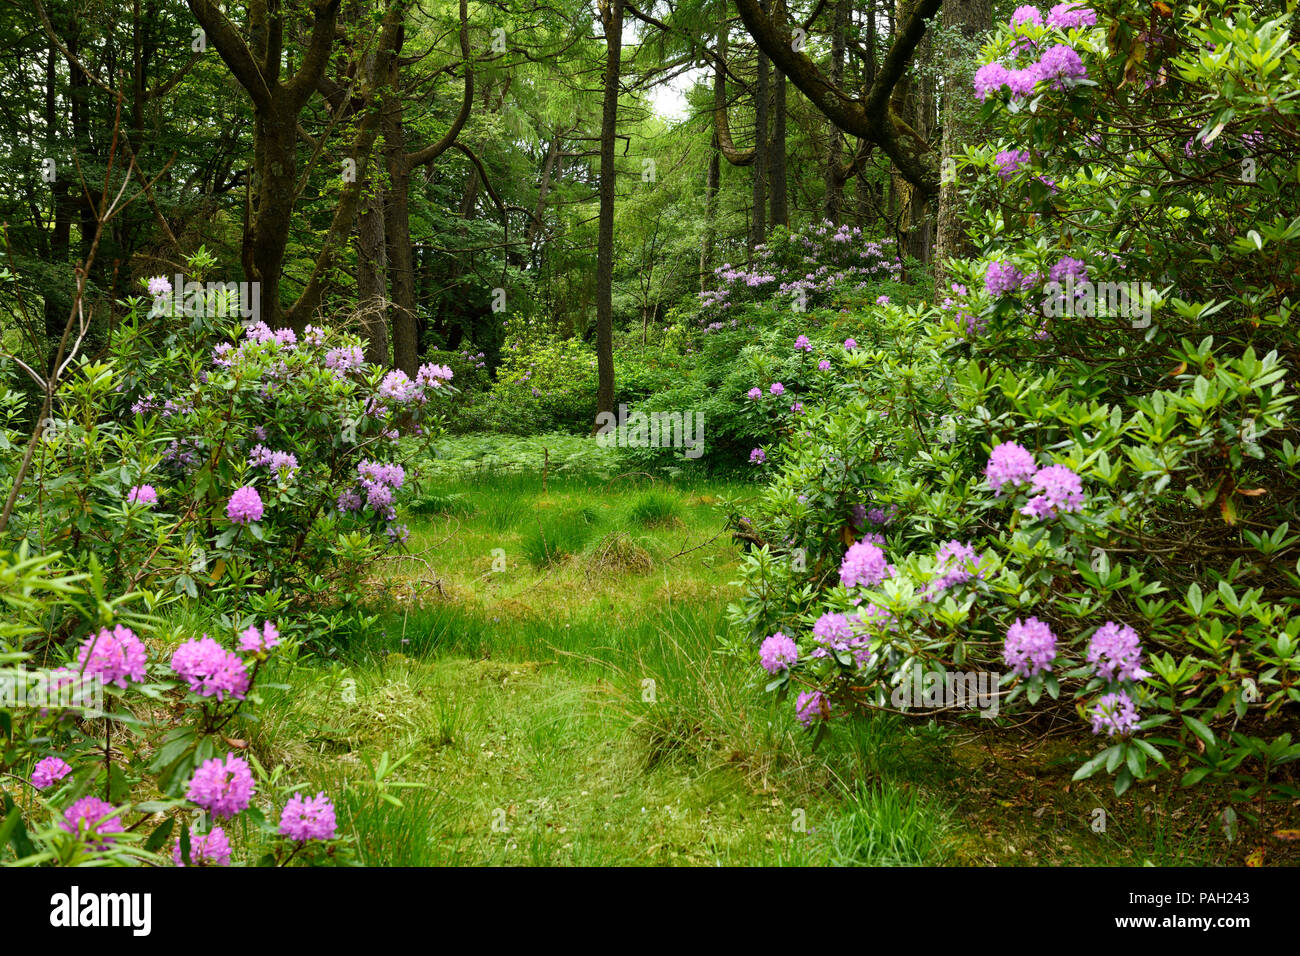 Les terrains de chasse de cerfs forestiers Benmore Estate à frapper avec Rhododendron ponticum envahissantes sur l'île de Mull Hébrides intérieures Scotland UK Banque D'Images